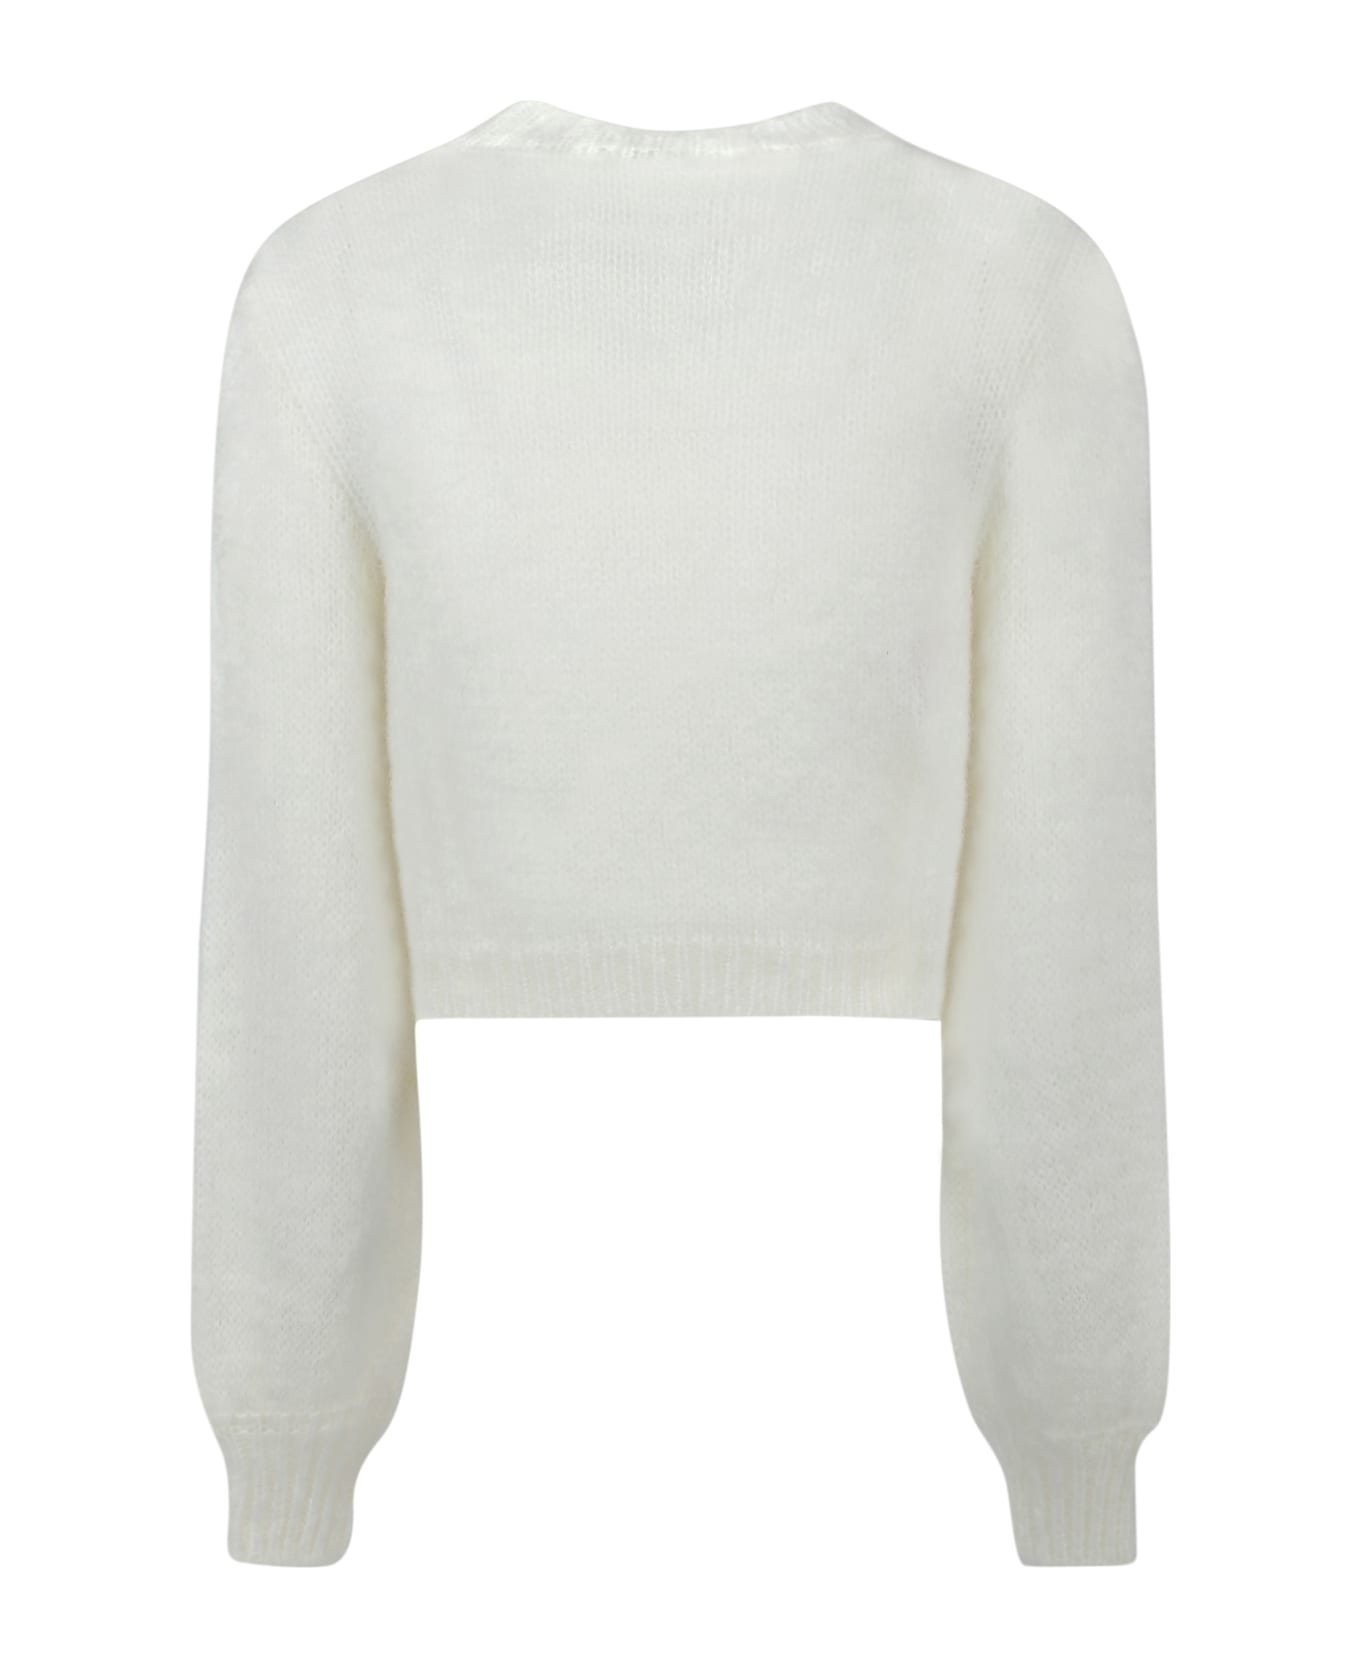 Marni Sweater - 00w01